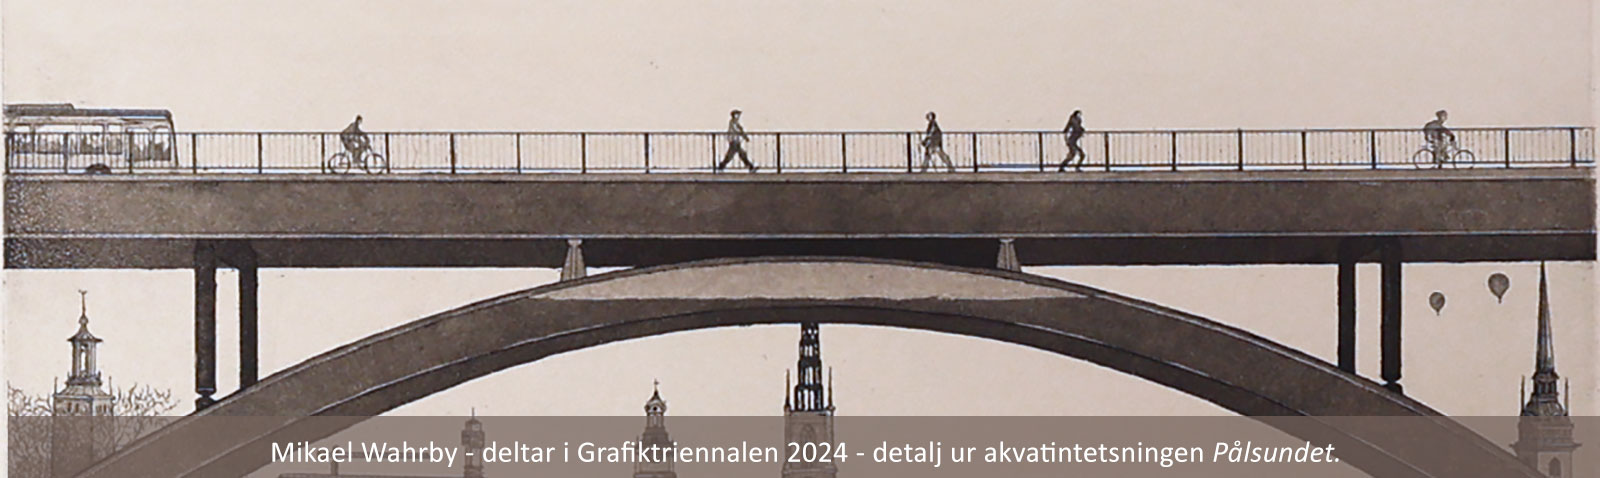 Mikael Wahrby - deltar i Grafiktriennalen 2024 - detalj ur akvatintetsningen Pålsundet.